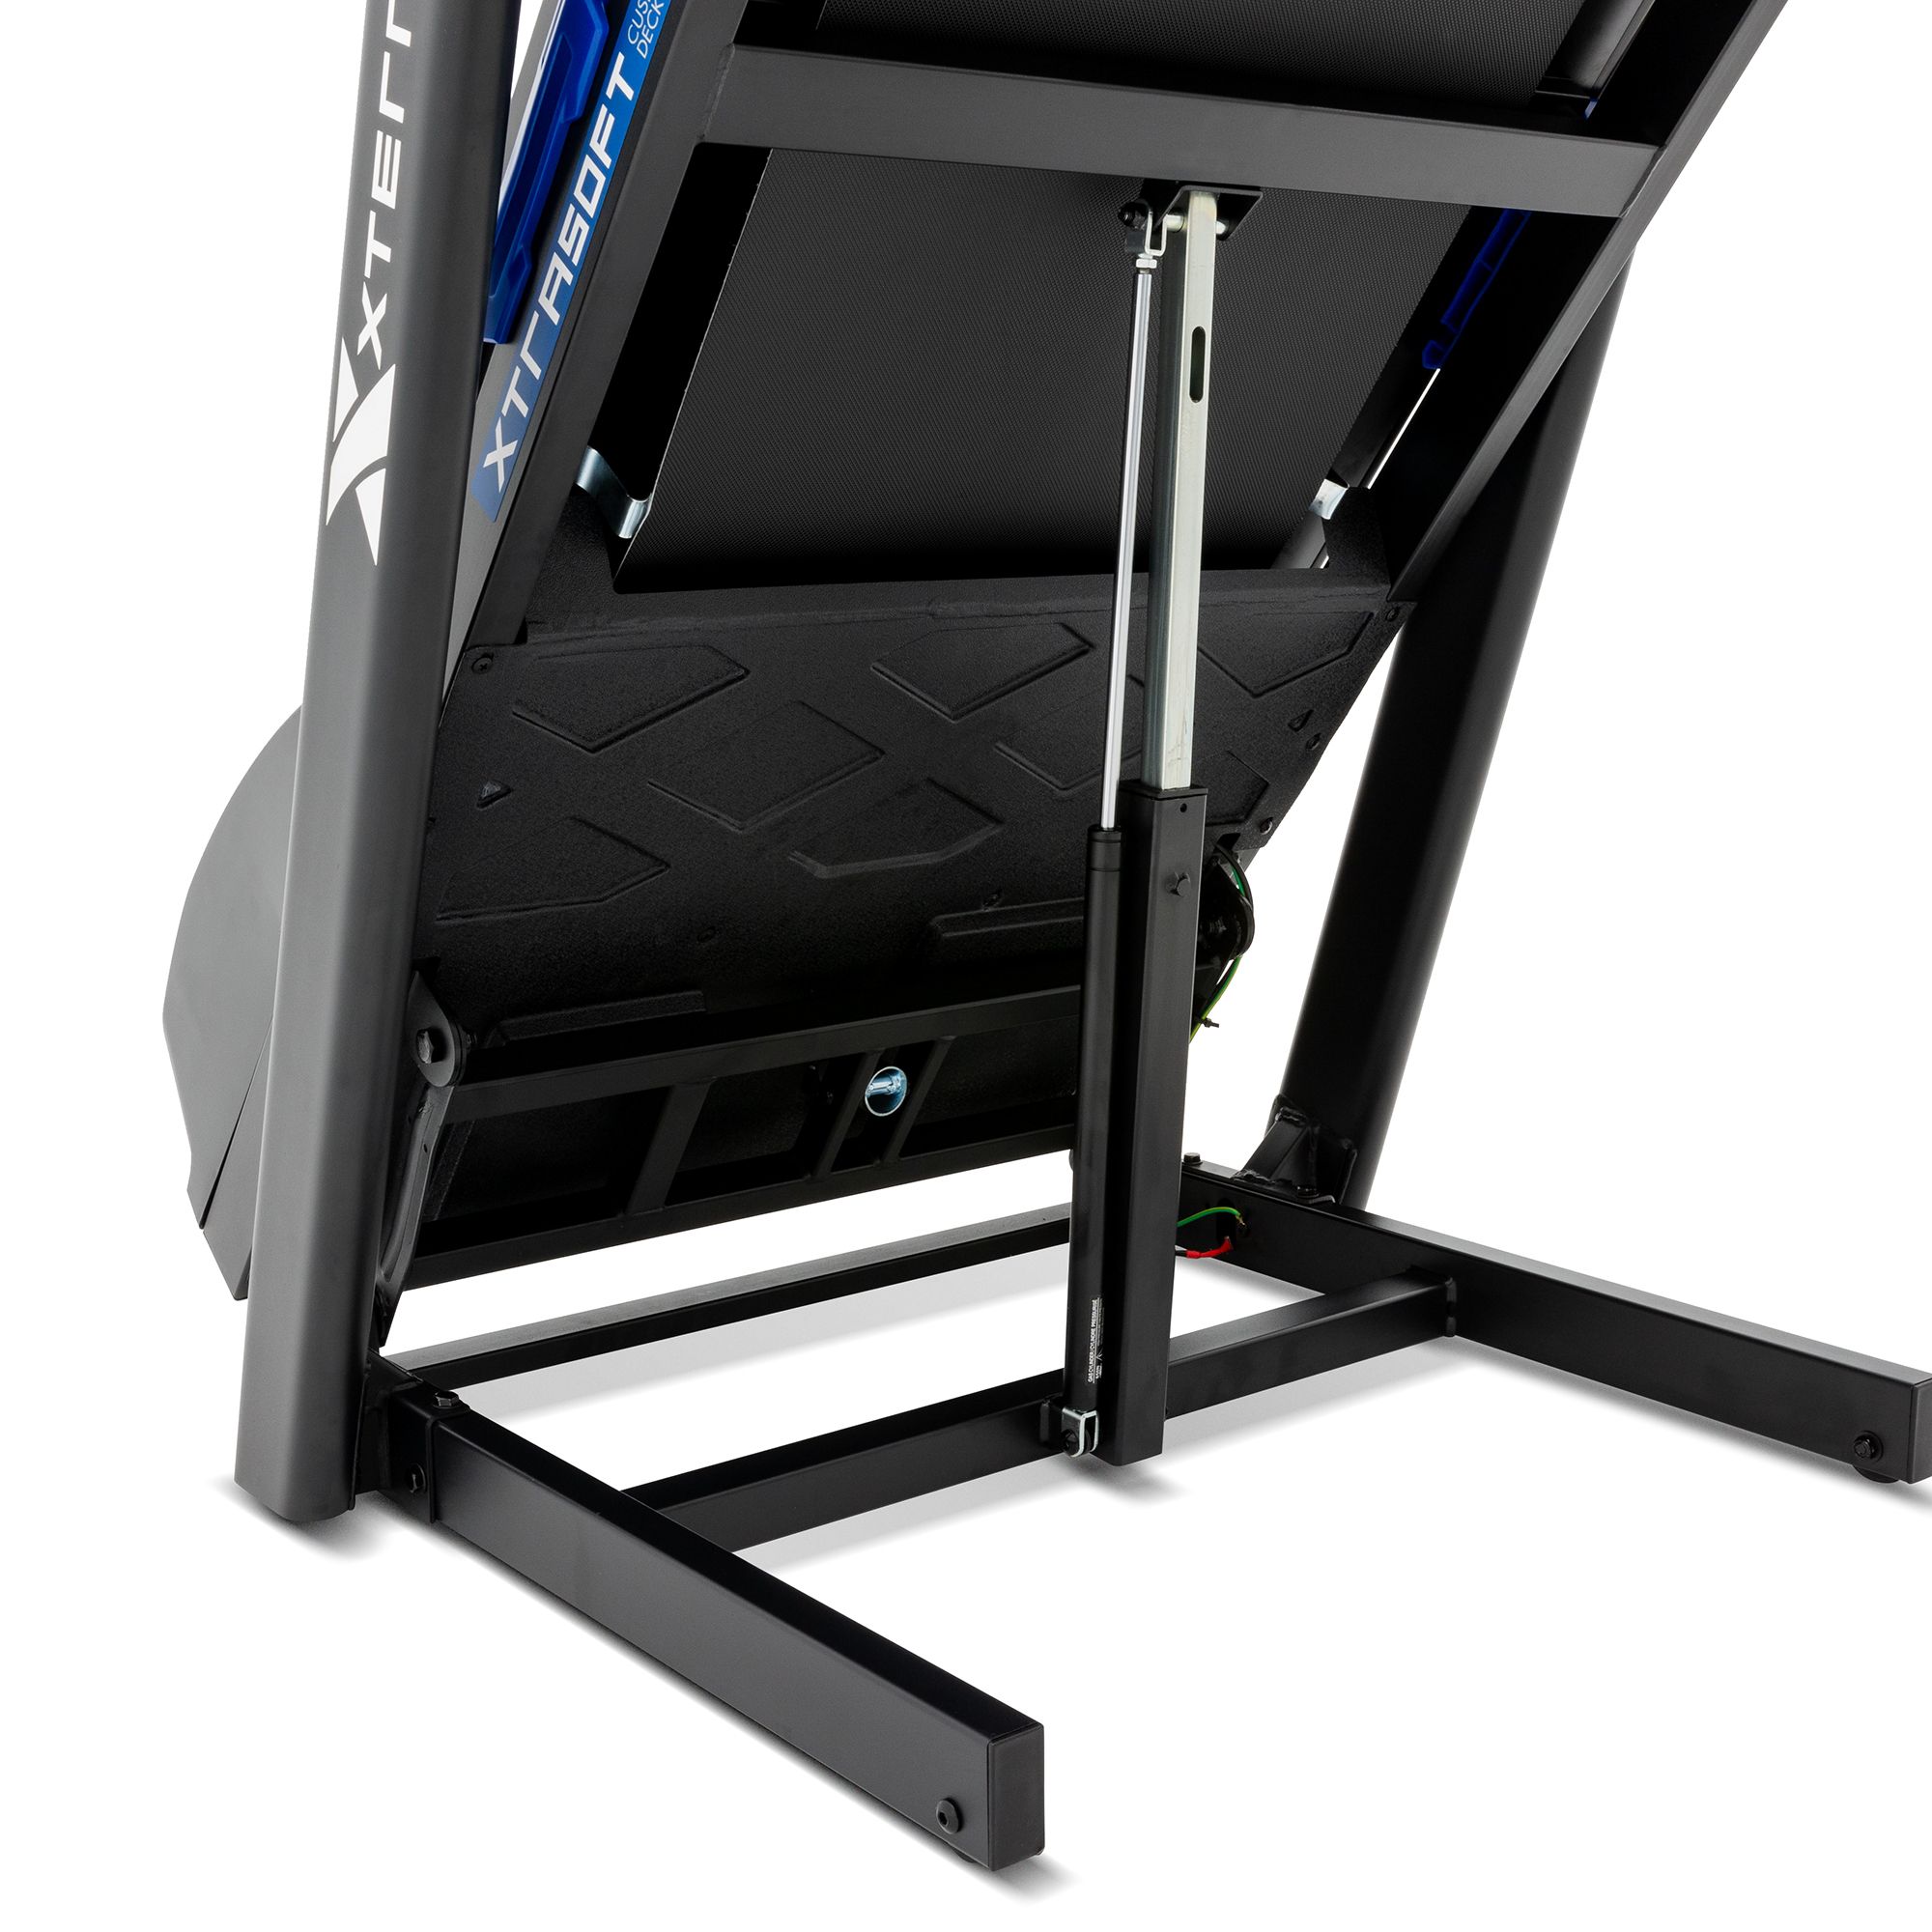 XTERRA TR75 Treadmill